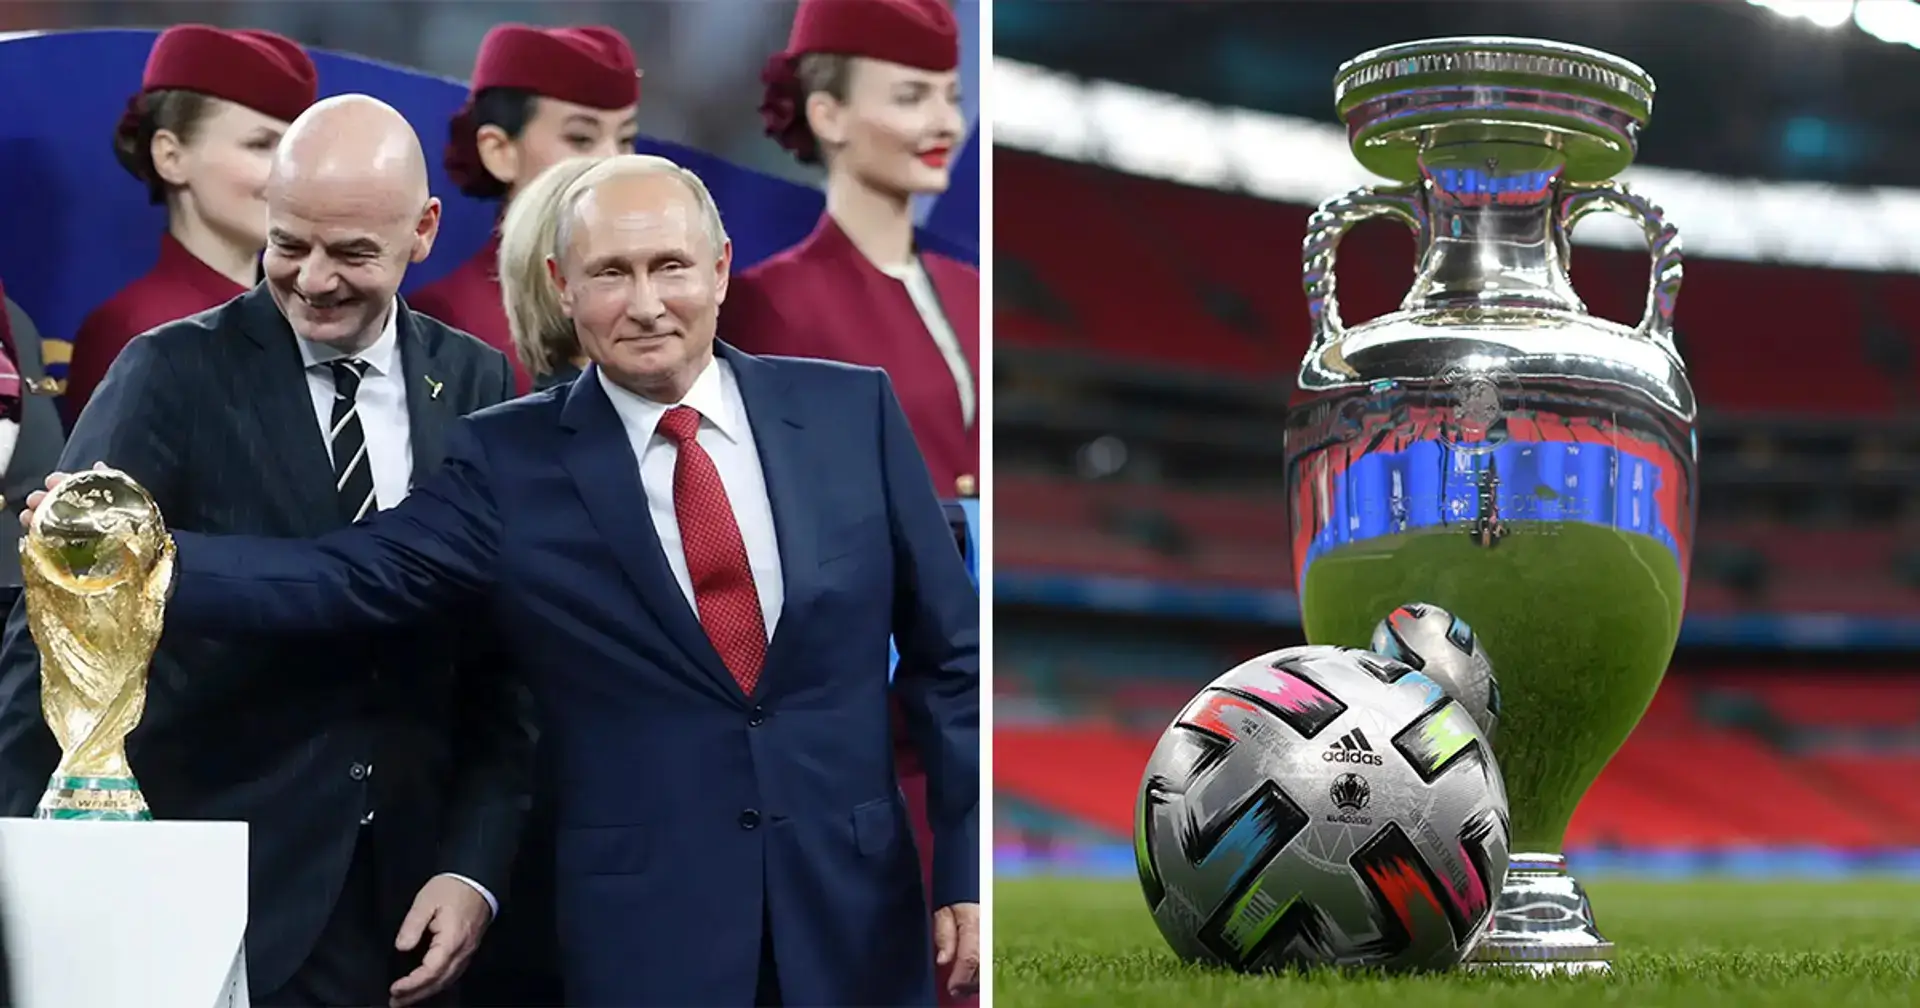 Rusia lanza una candidatura para albergar la Eurocopa 2028 o 2032 a pesar de la suspensión del fútbol internacional